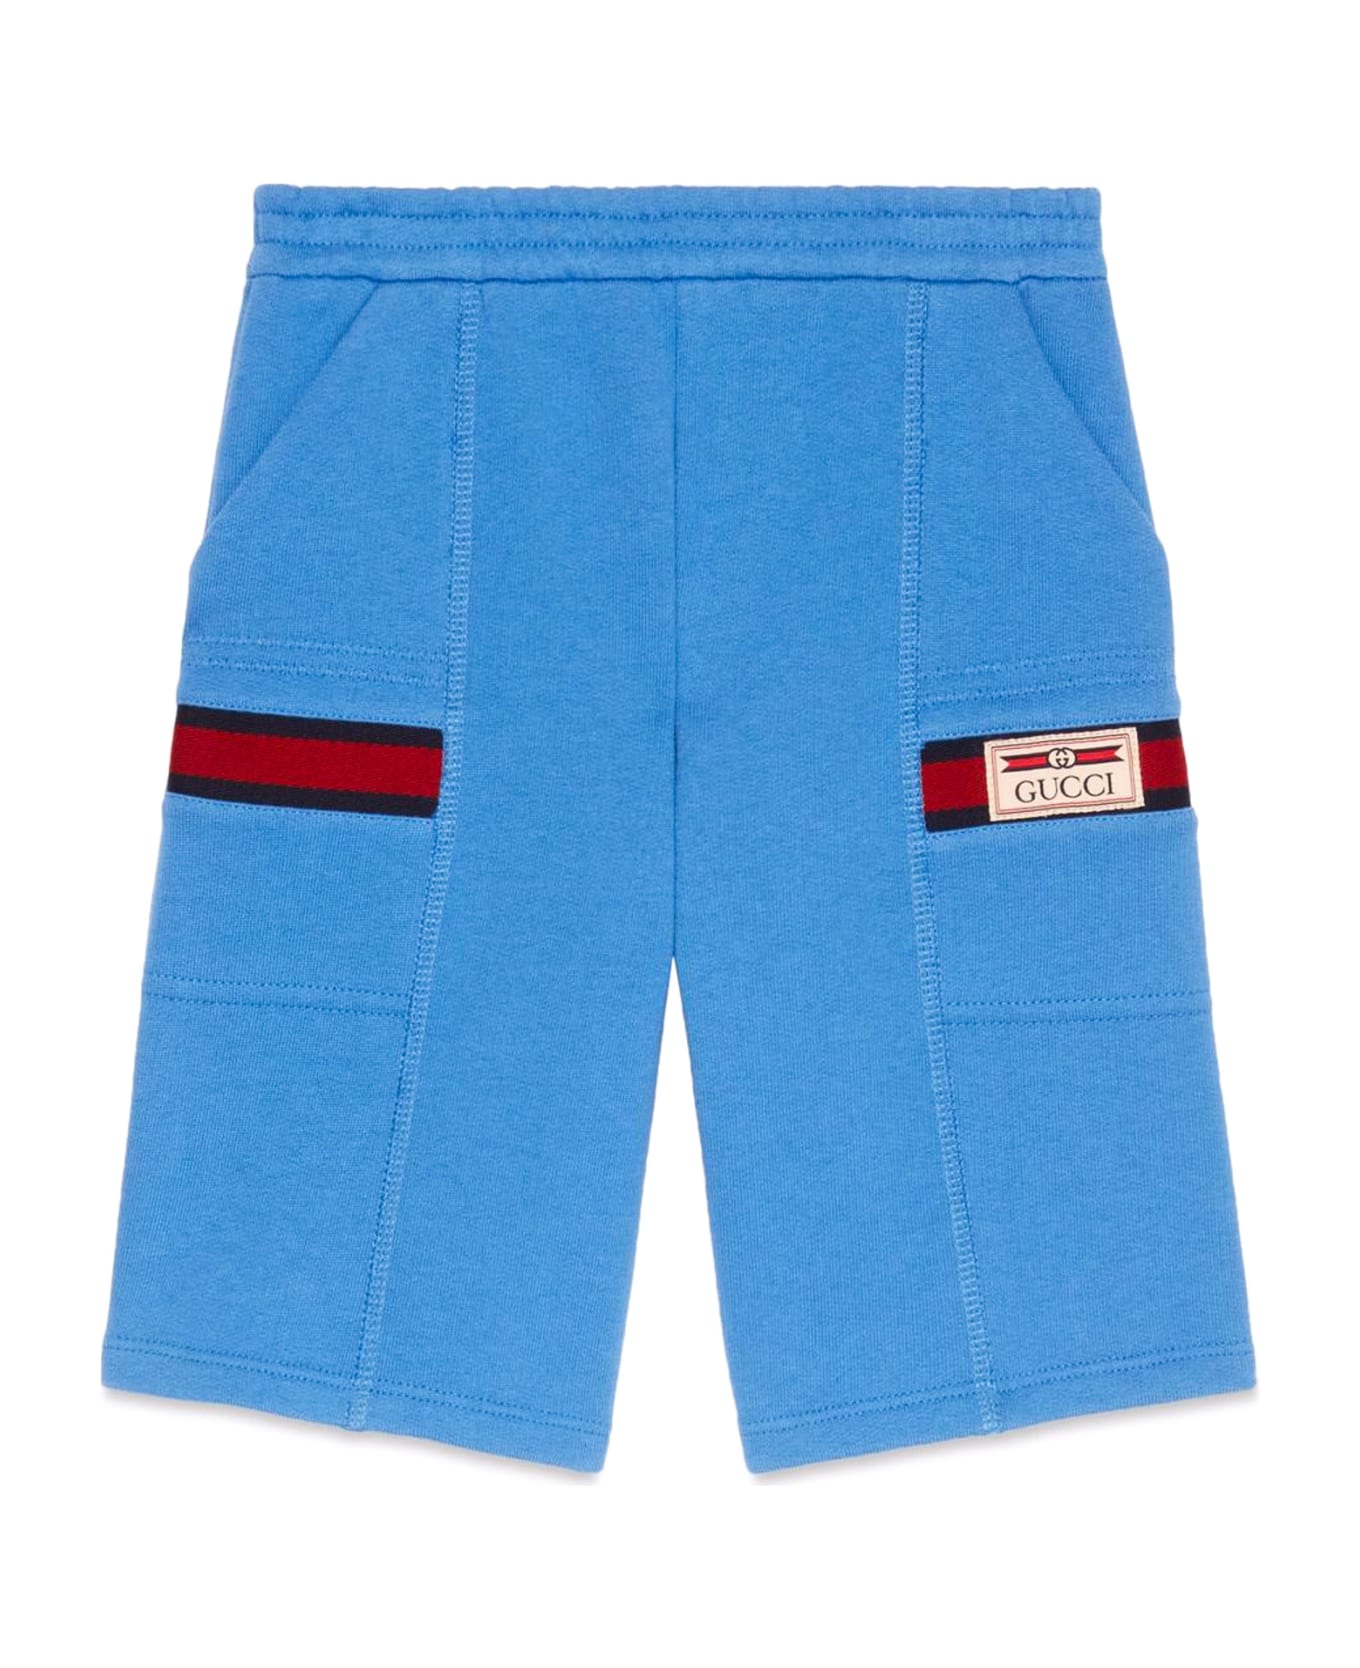 Gucci Children's Cotton Shorts - Blue